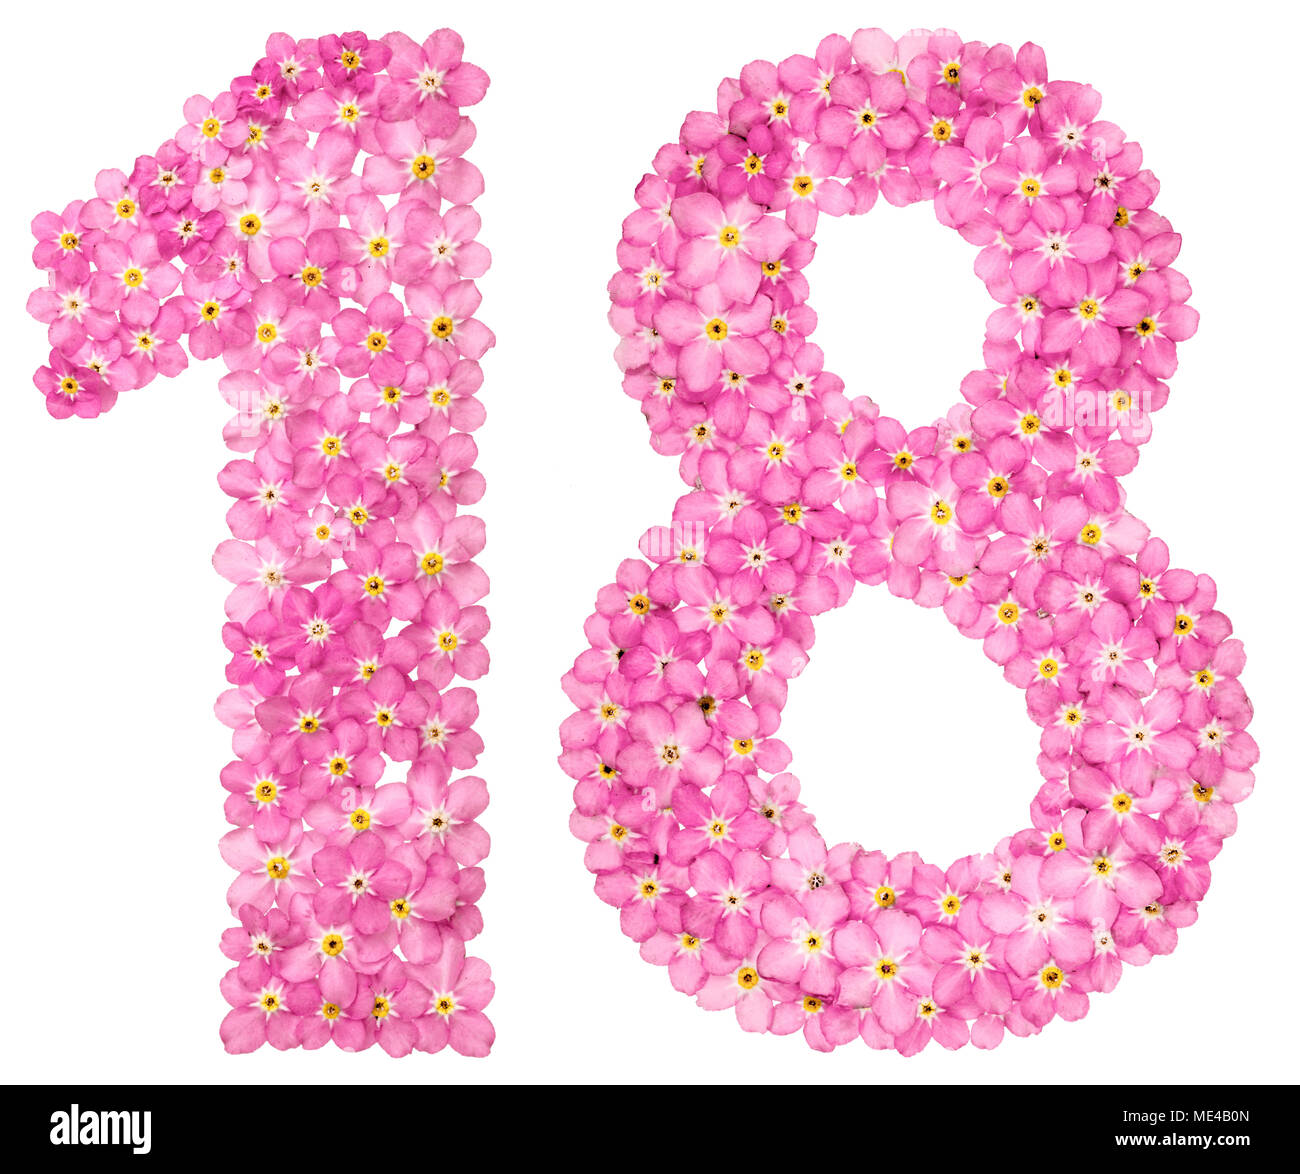 Arabische Zahlen 18, 18, von rosa Vergissmeinnicht Blumen, auf weißem  Hintergrund Stockfotografie - Alamy